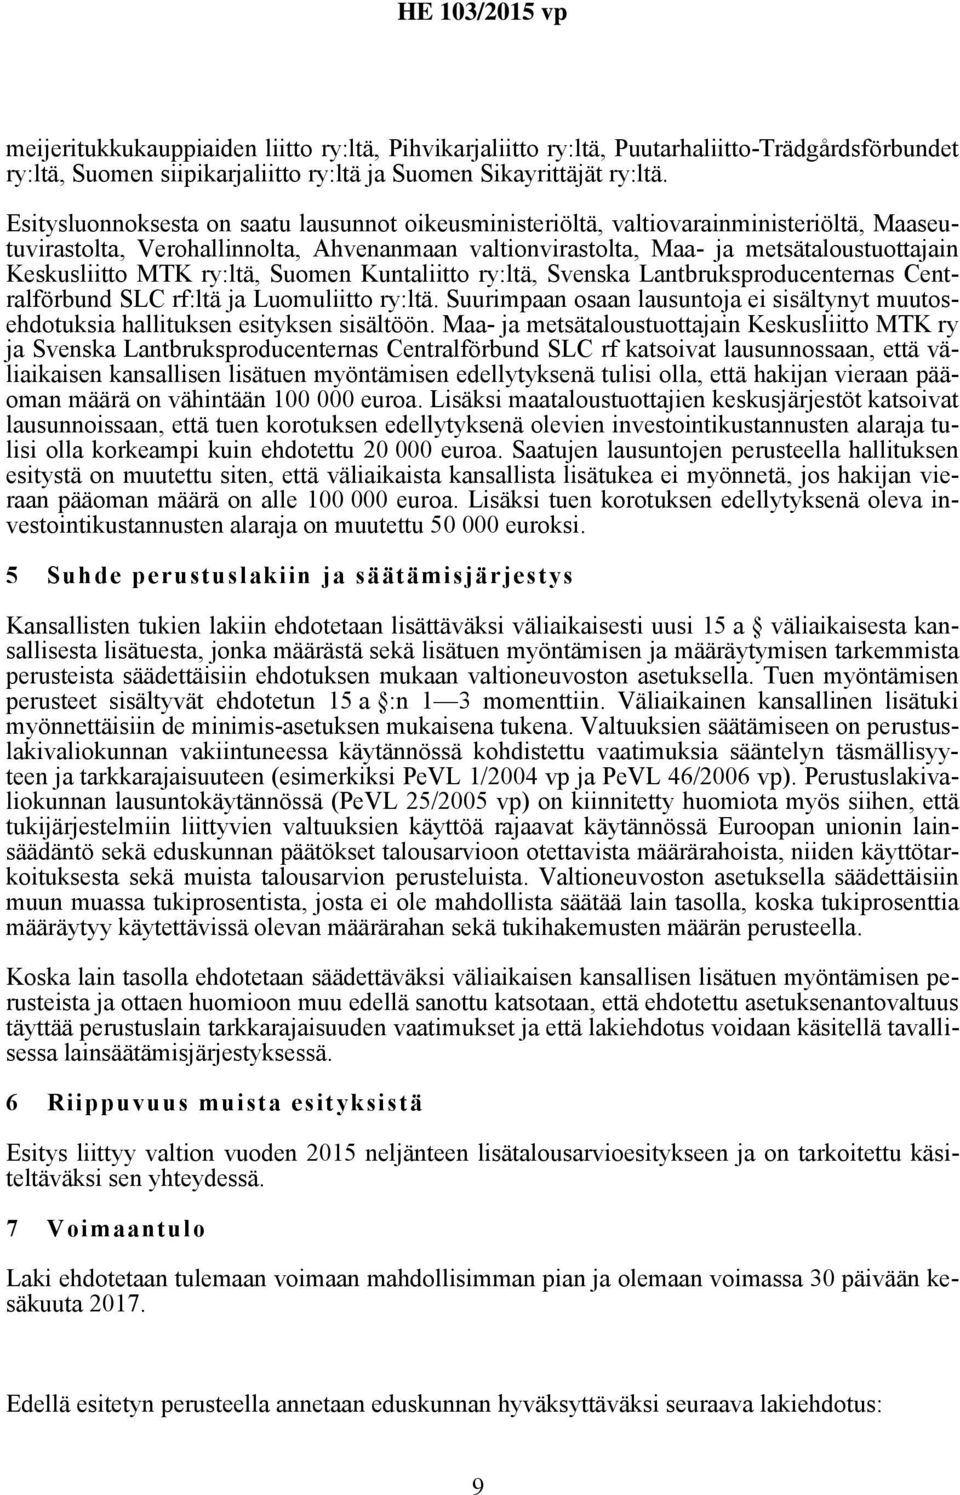 MTK ry:ltä, Suomen Kuntaliitto ry:ltä, Svenska Lantbruksproducenternas Centralförbund SLC rf:ltä ja Luomuliitto ry:ltä.